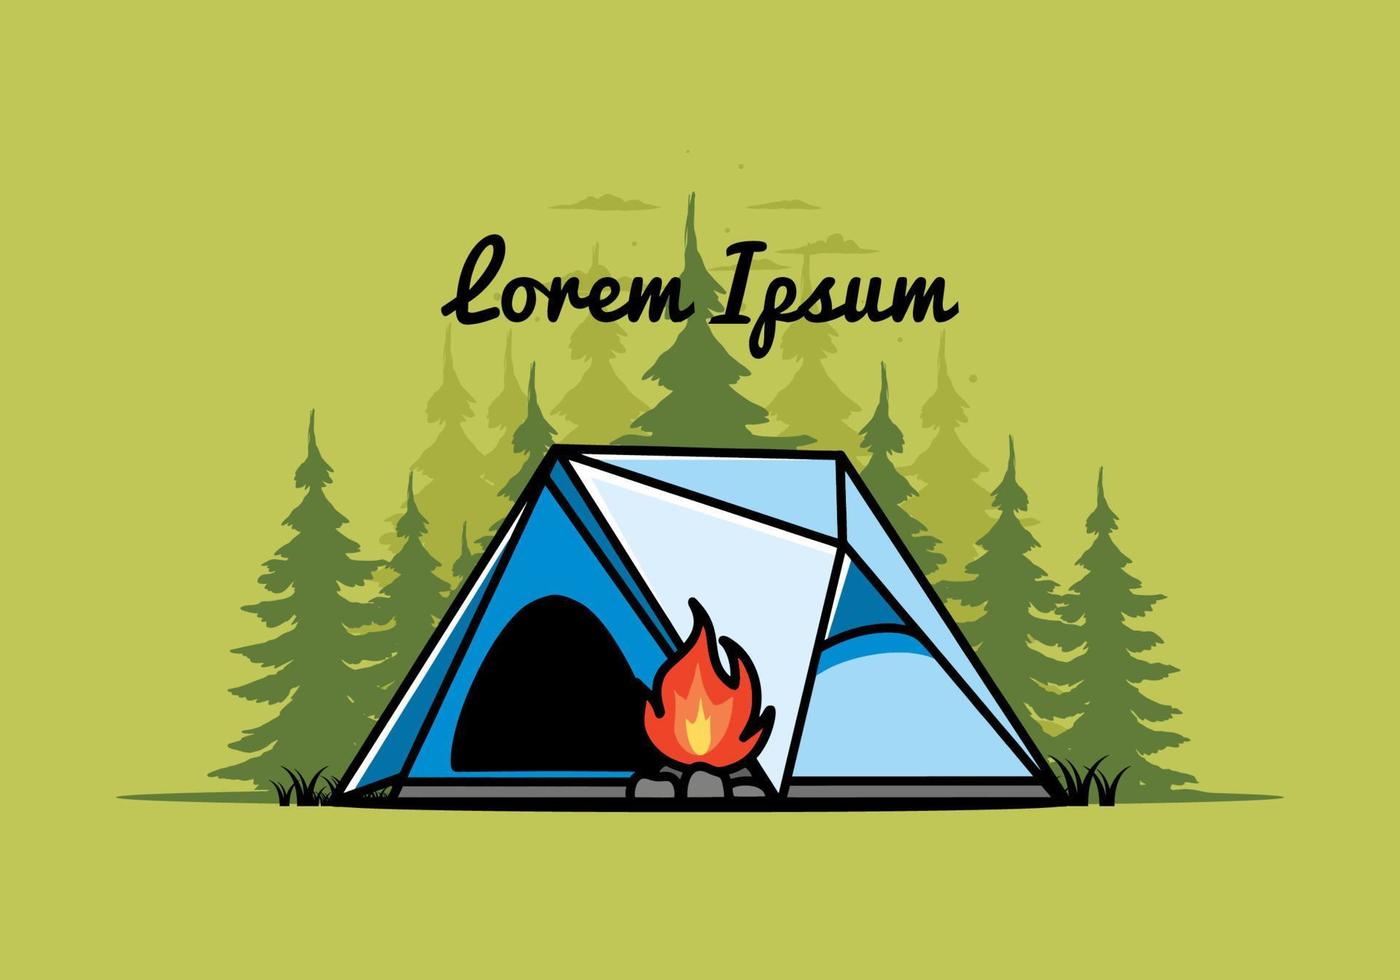 tenda da campeggio triangolare e disegno dell'illustrazione del falò vettore